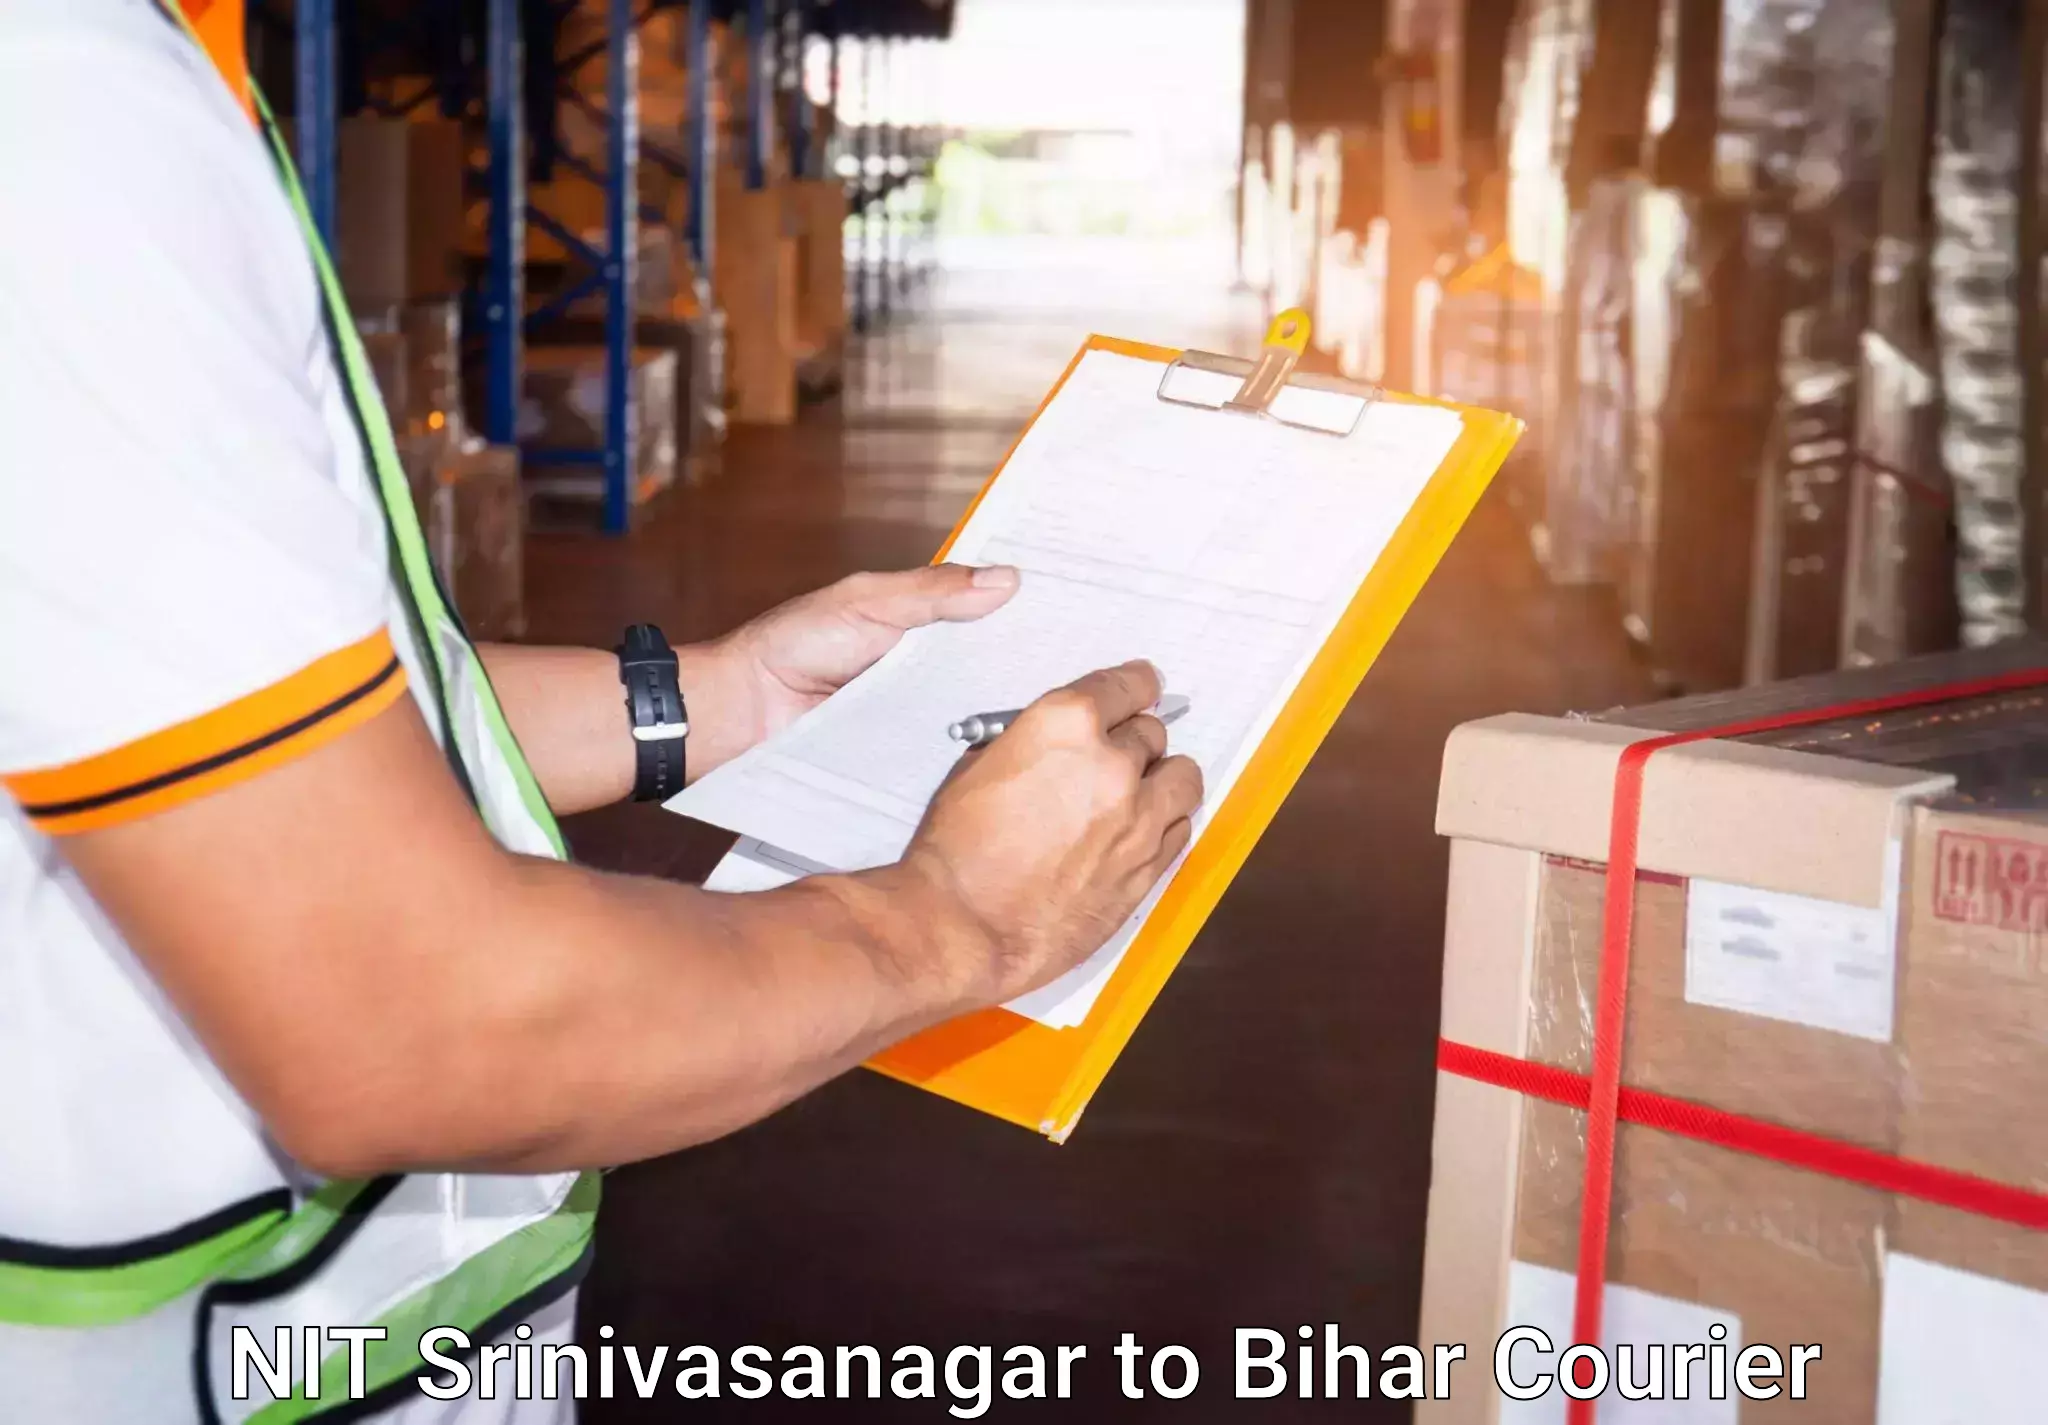 Luggage transport consulting NIT Srinivasanagar to Bihar